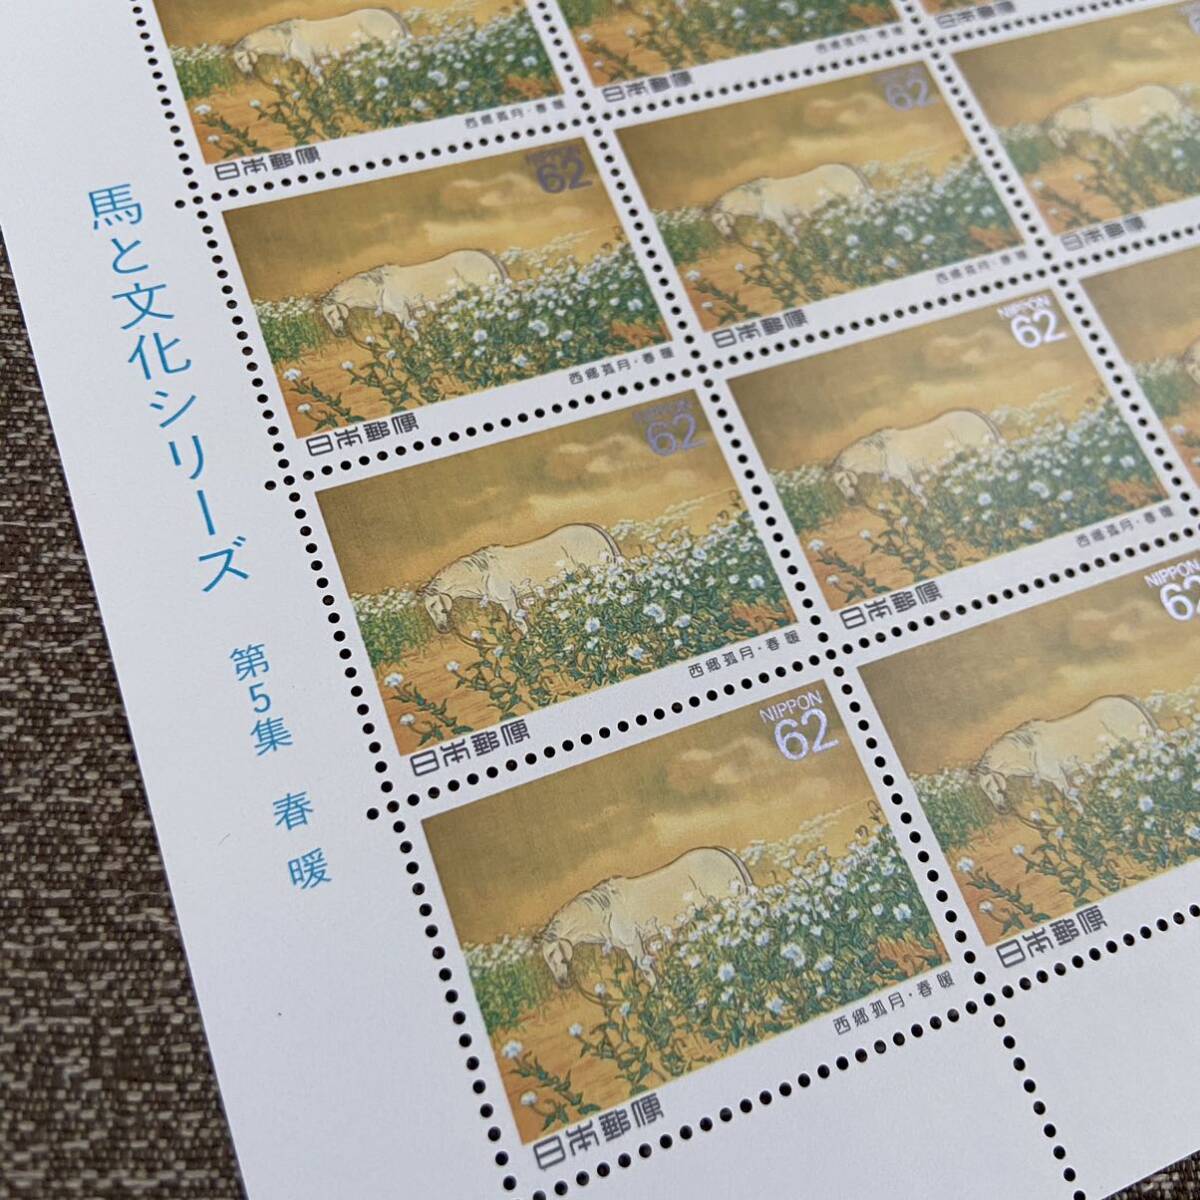  воспоминание   марка   *   марка  　 лошадь   и ... серия 　 сиденье 　62  йен  марка  　...5...　［ весна  ...］　 почта Японии 　 коллекция 　 лошадь  